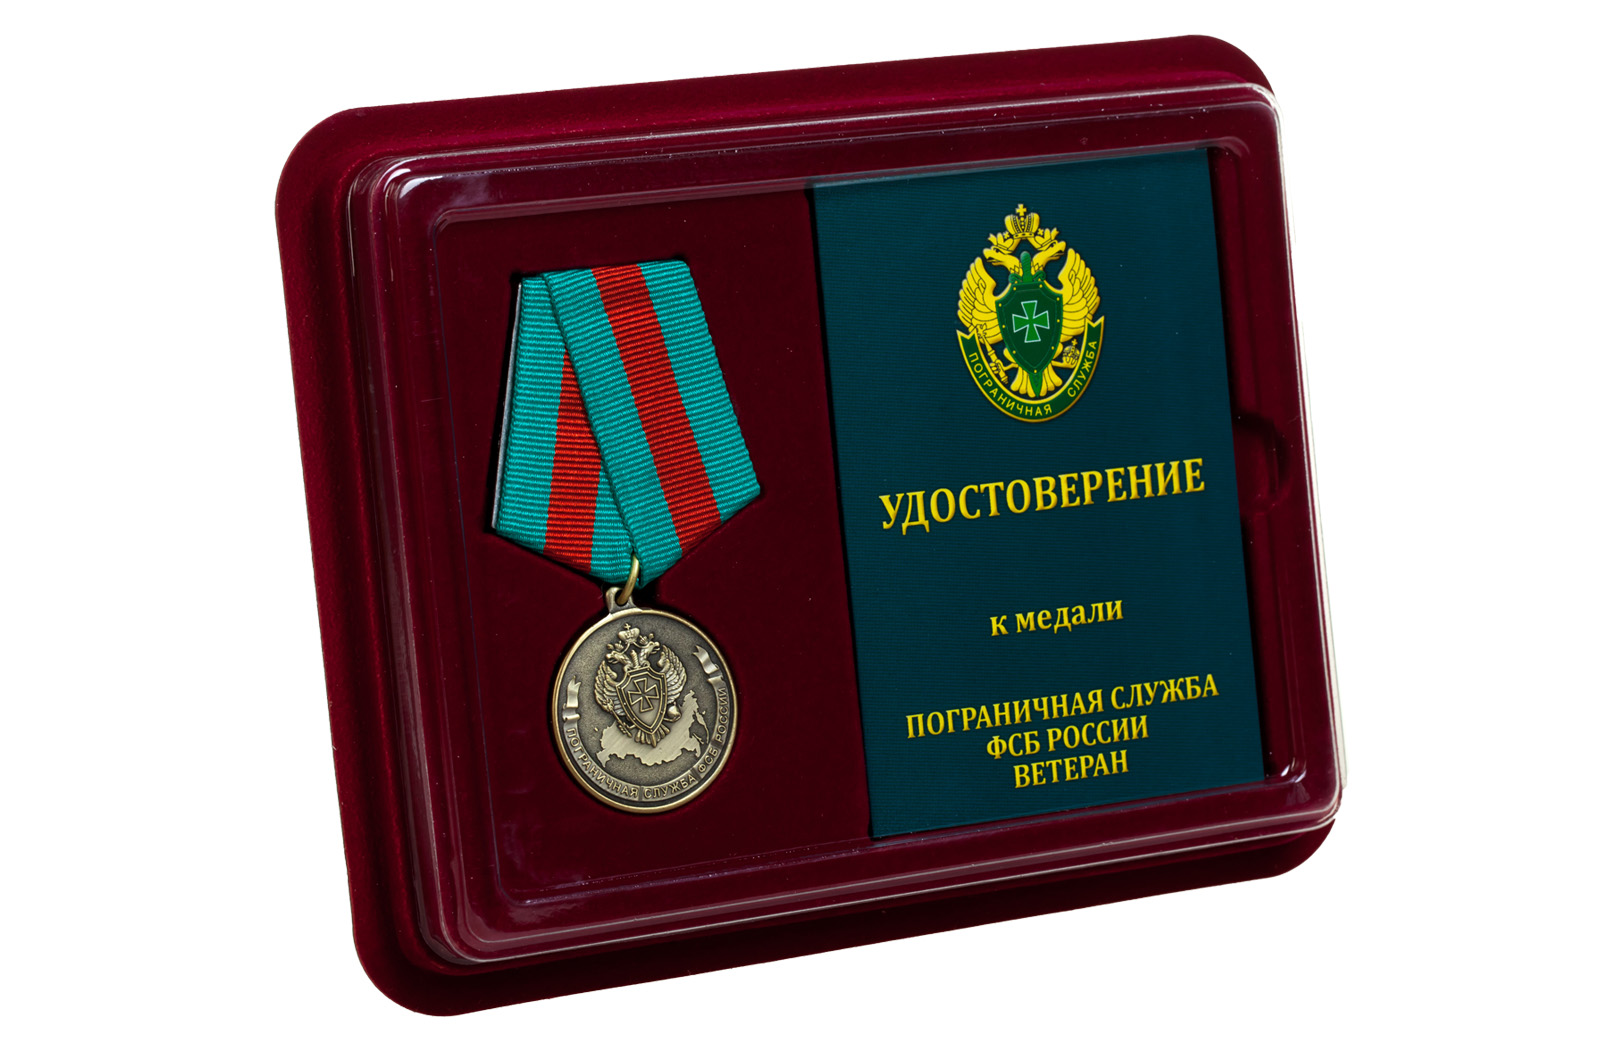 Медаль "Ветеран Погранслужбы ФСБ России" 